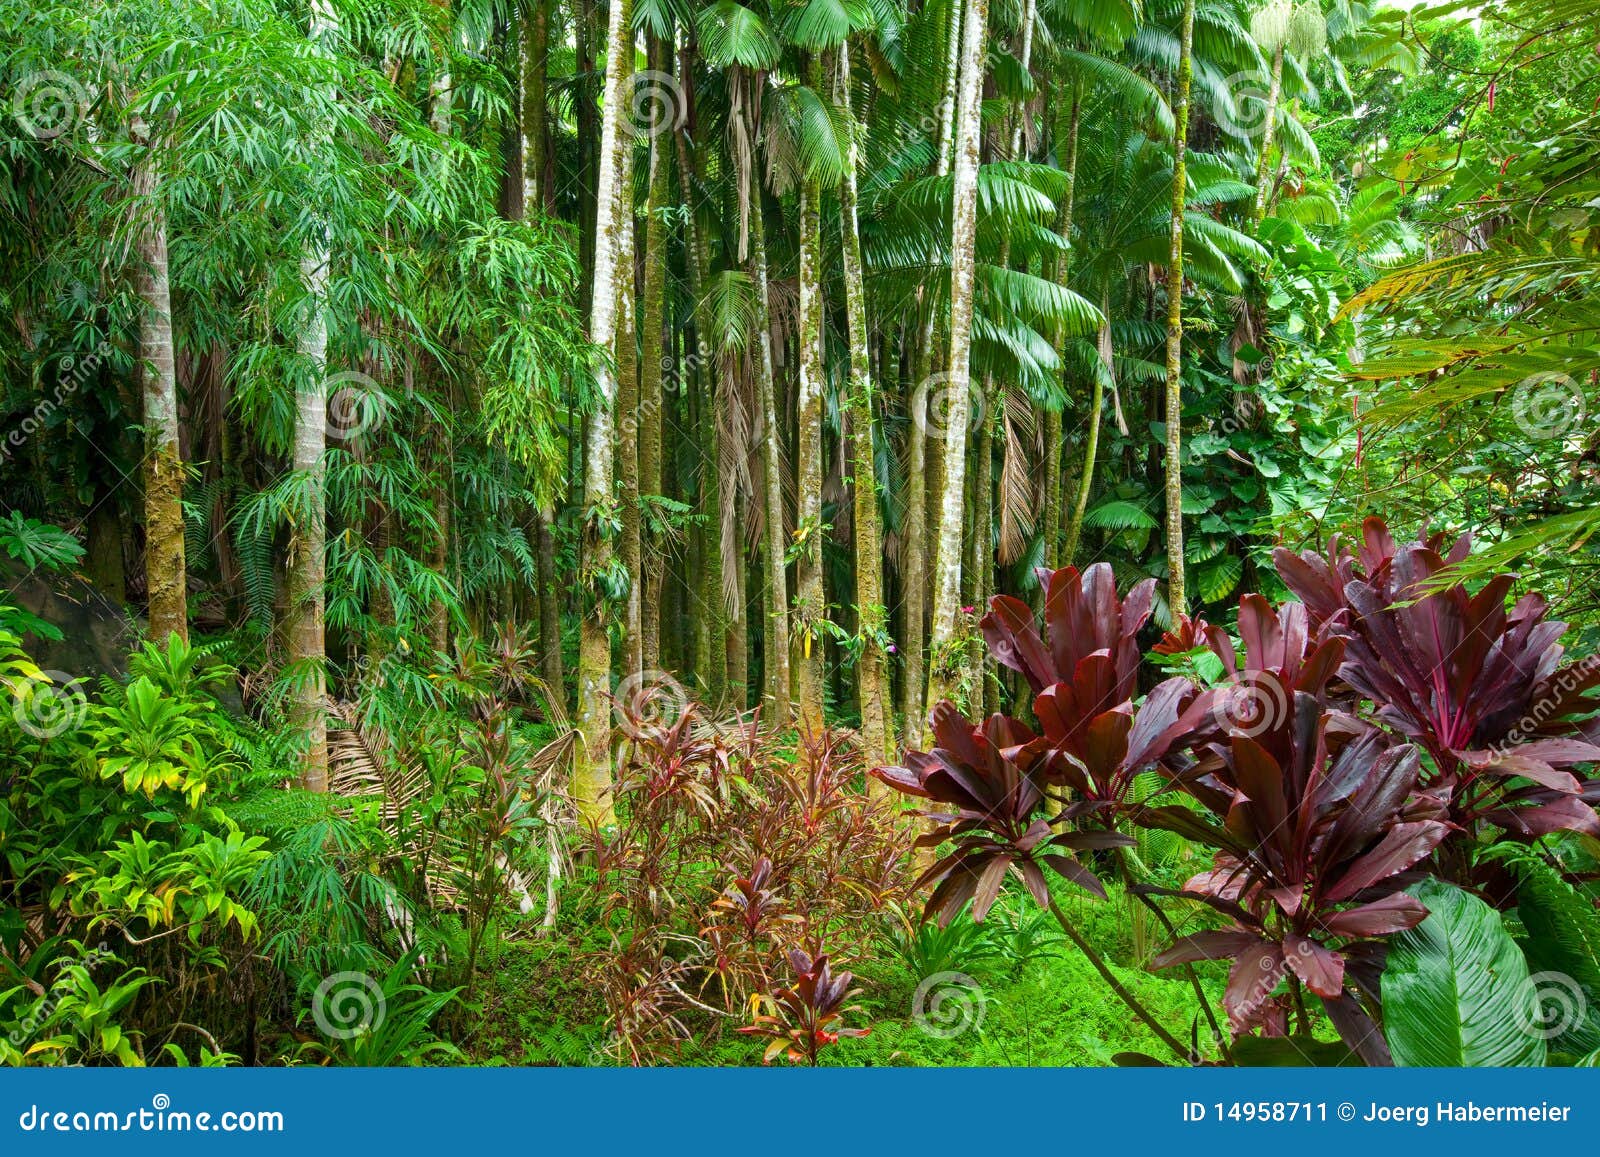 lush tropical rain forest